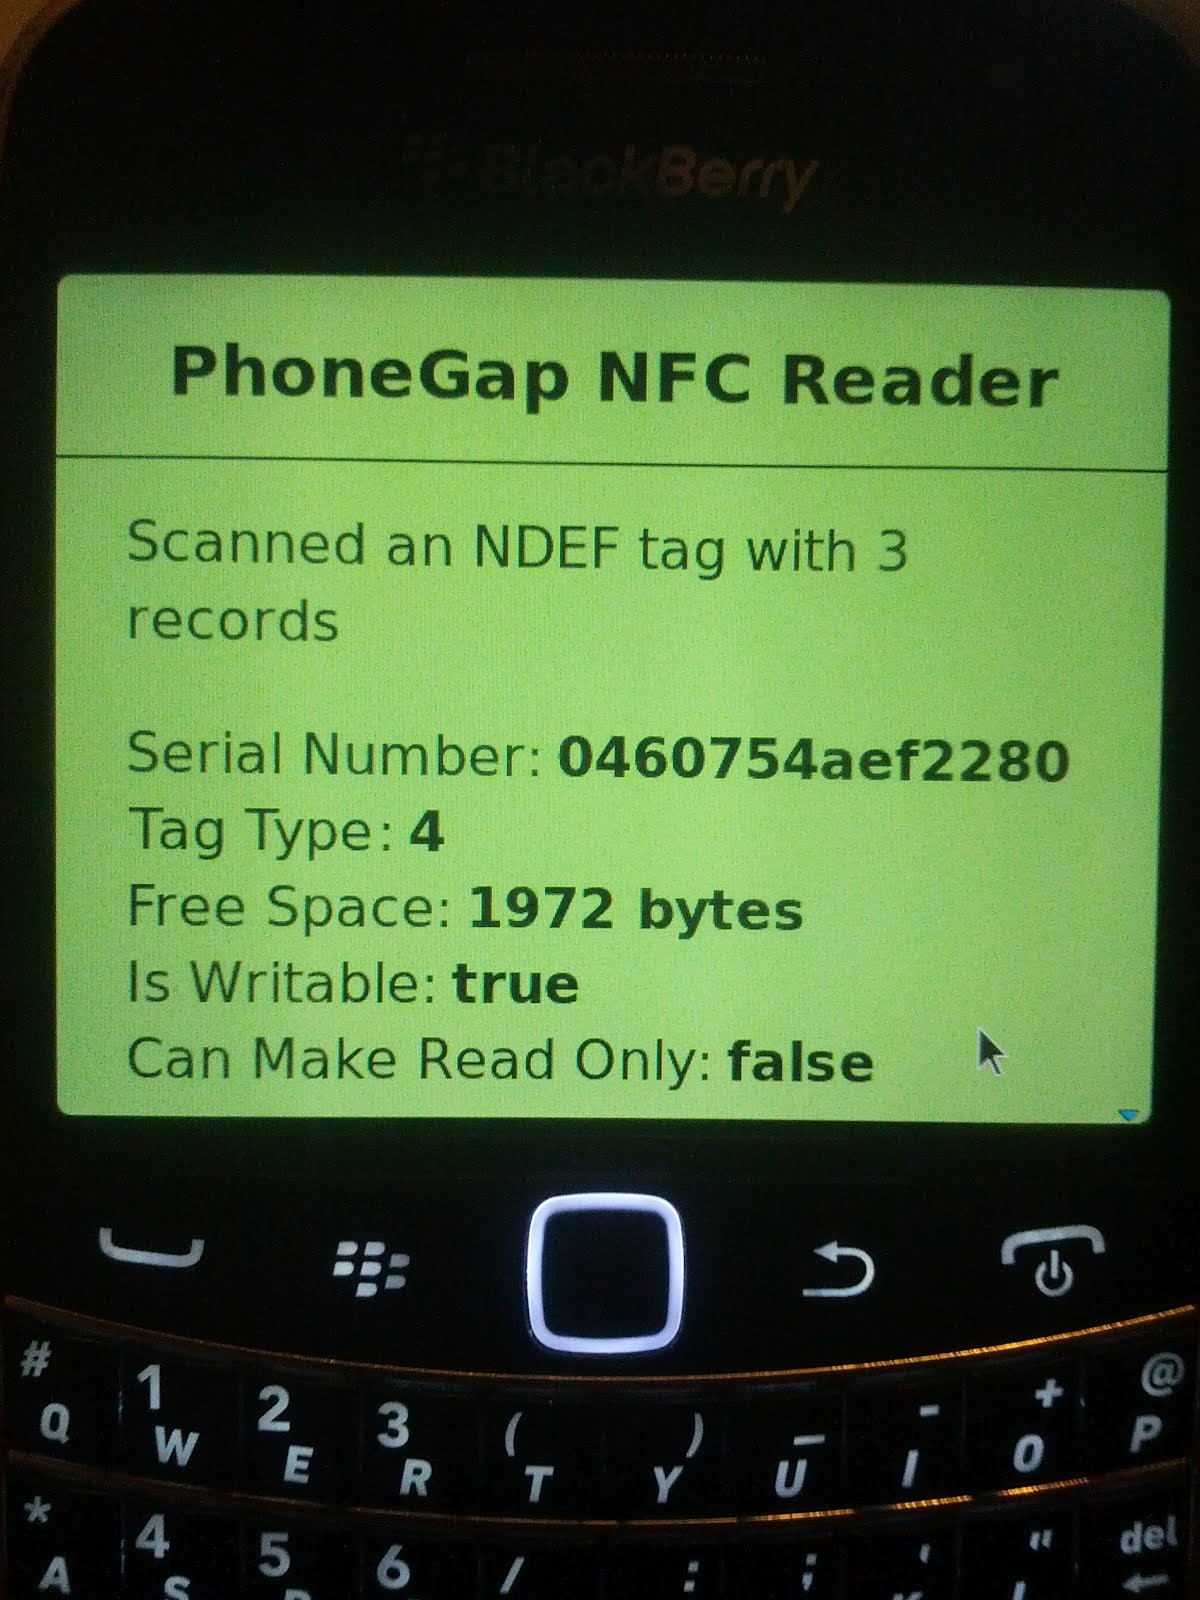 nfc_reader_blackberry_1